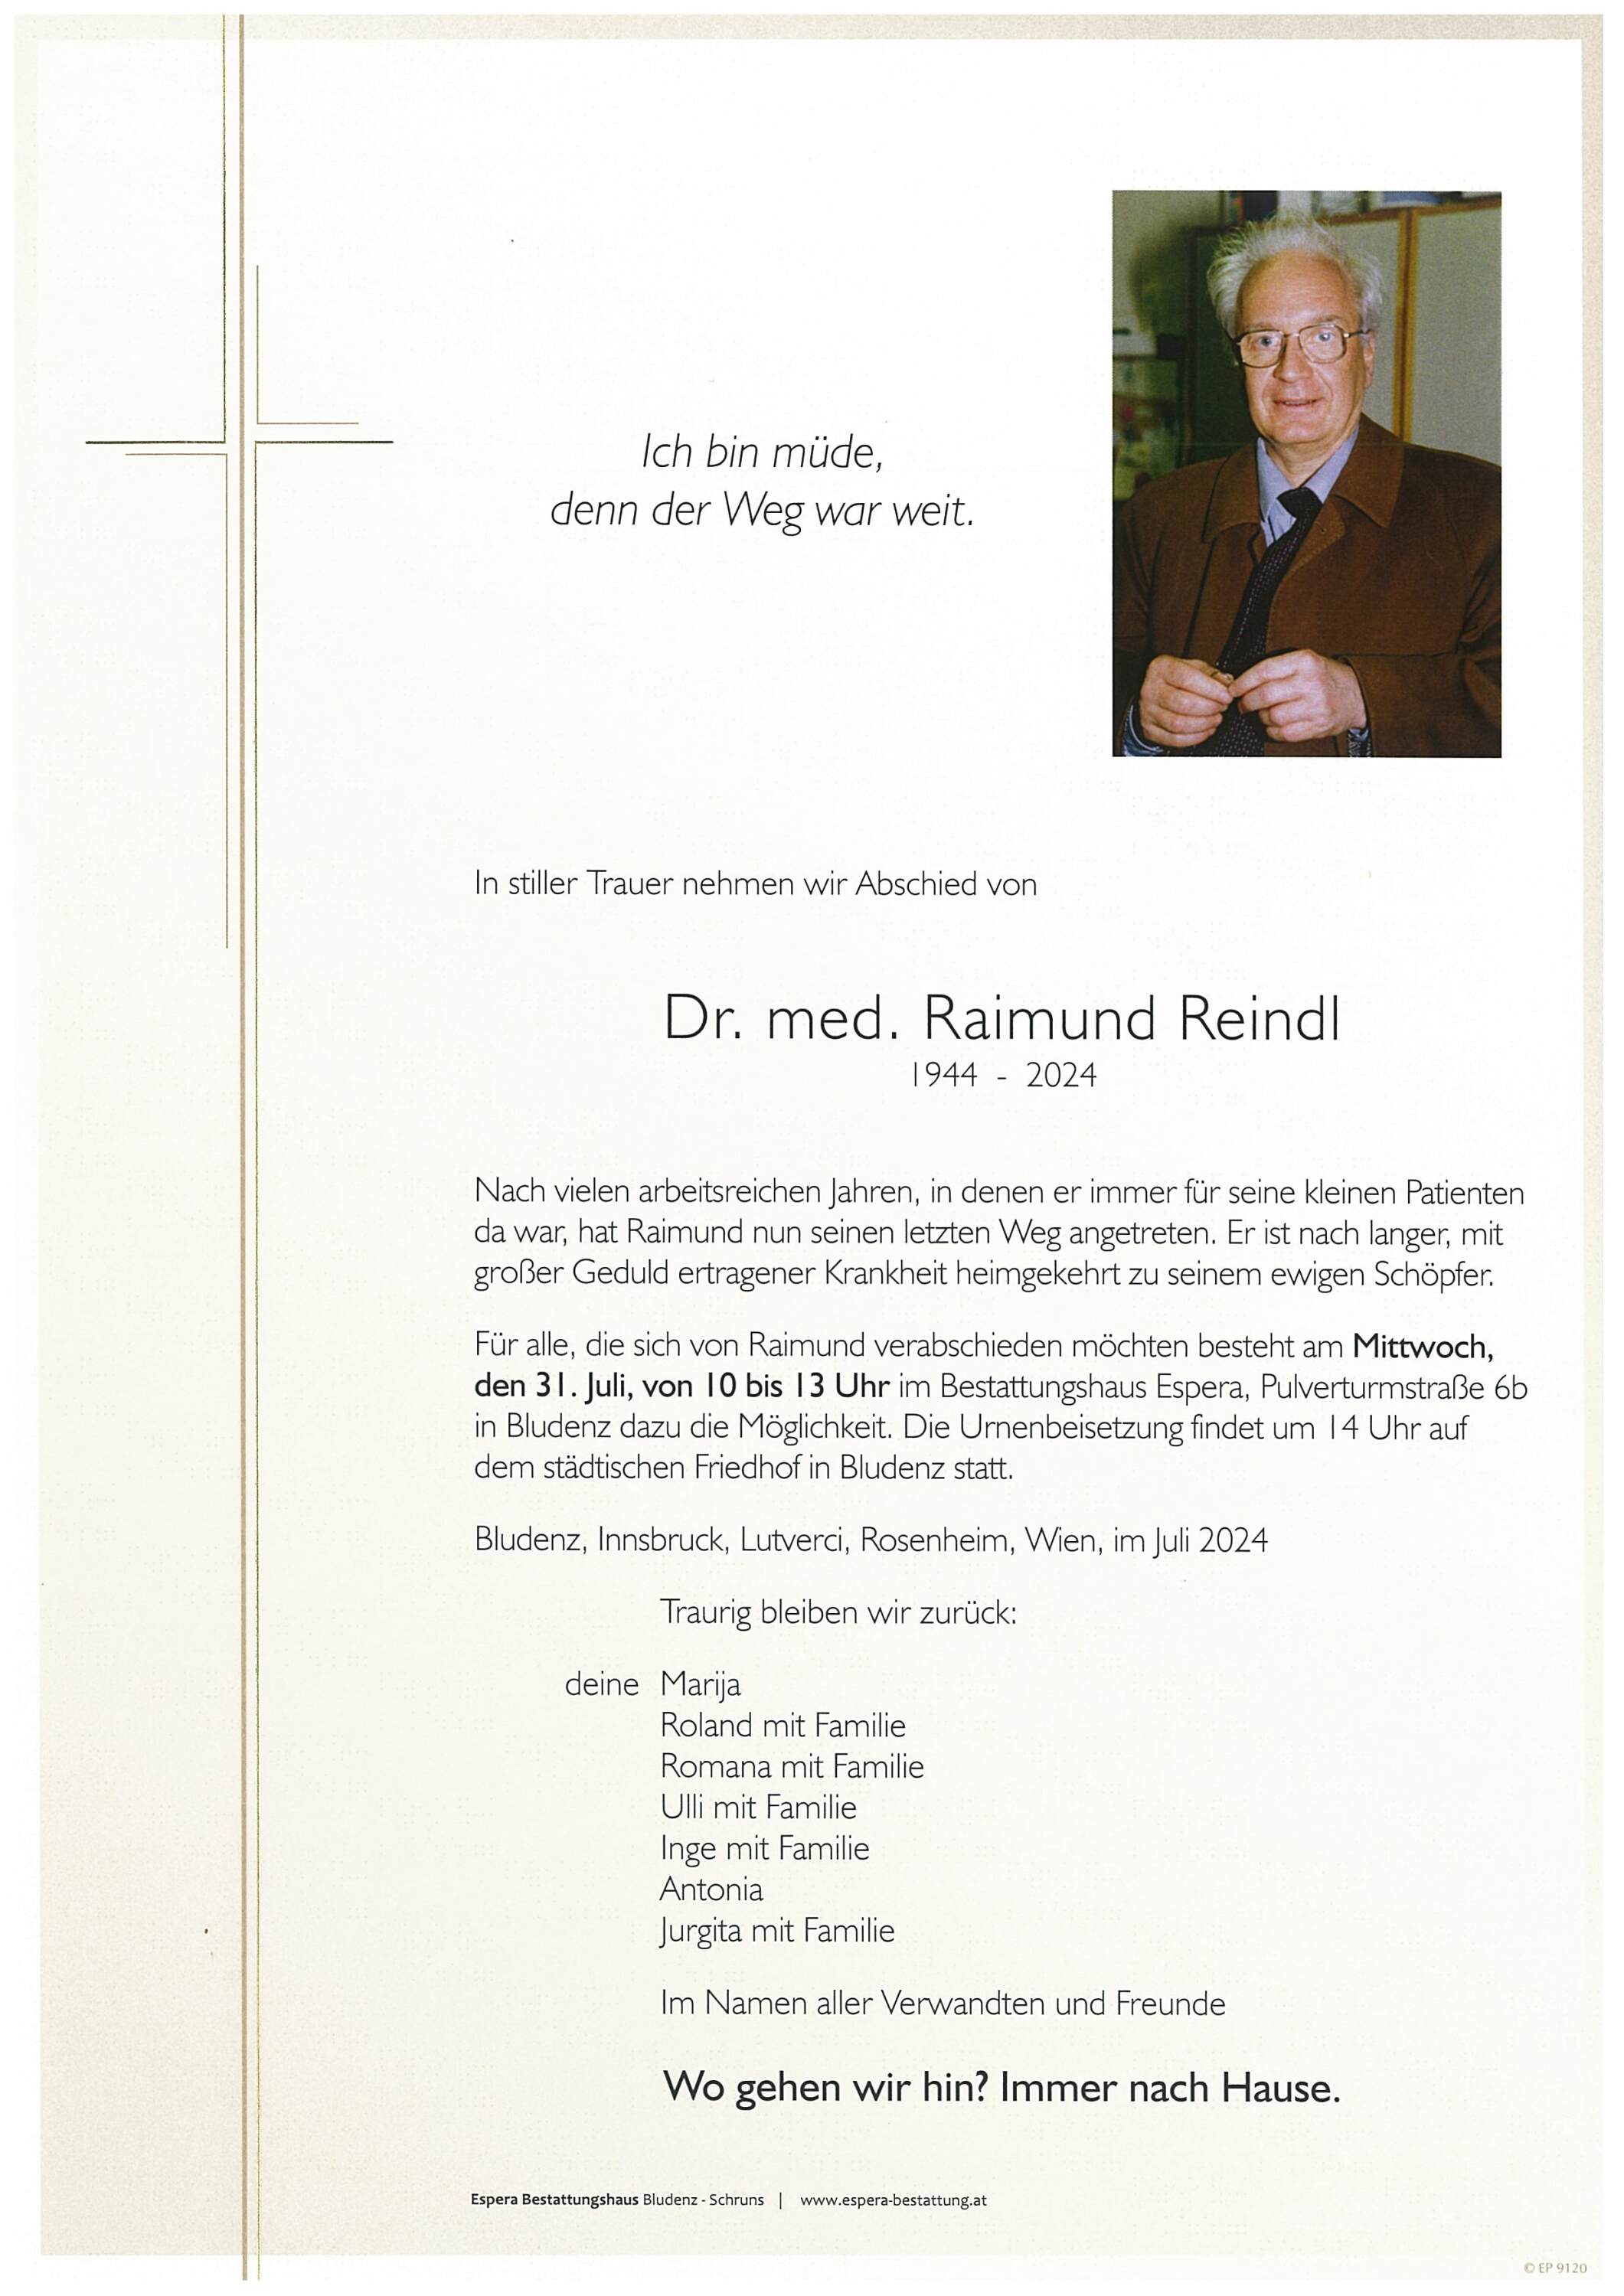 Raimund Reindl